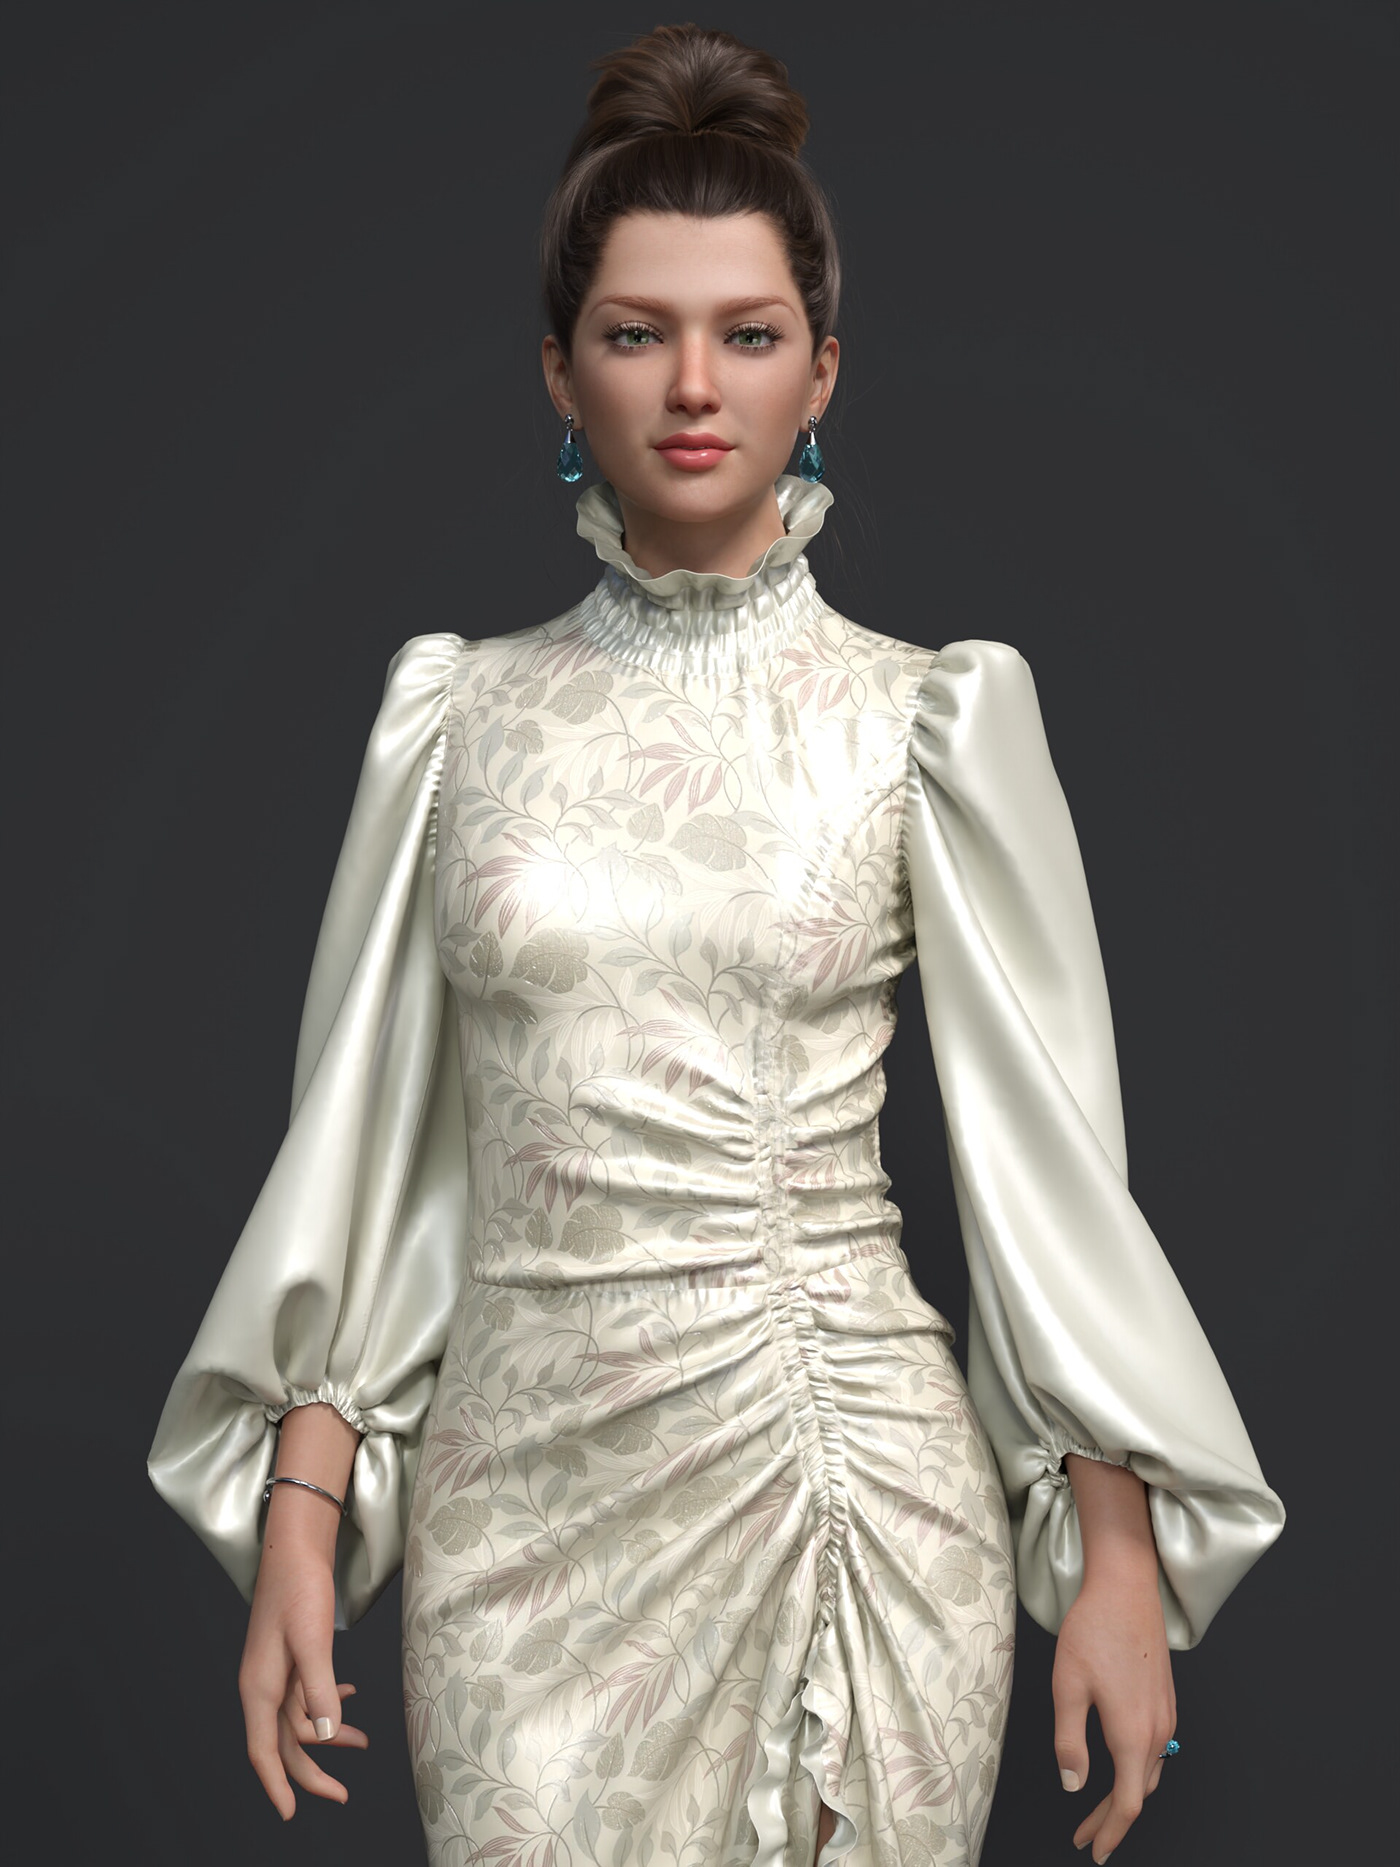 3D 3d modeling blender Render 3d fashion 3D Character 3D Character modeling 3D CLOTHING DESIGN fashion design 3d clothing mockup